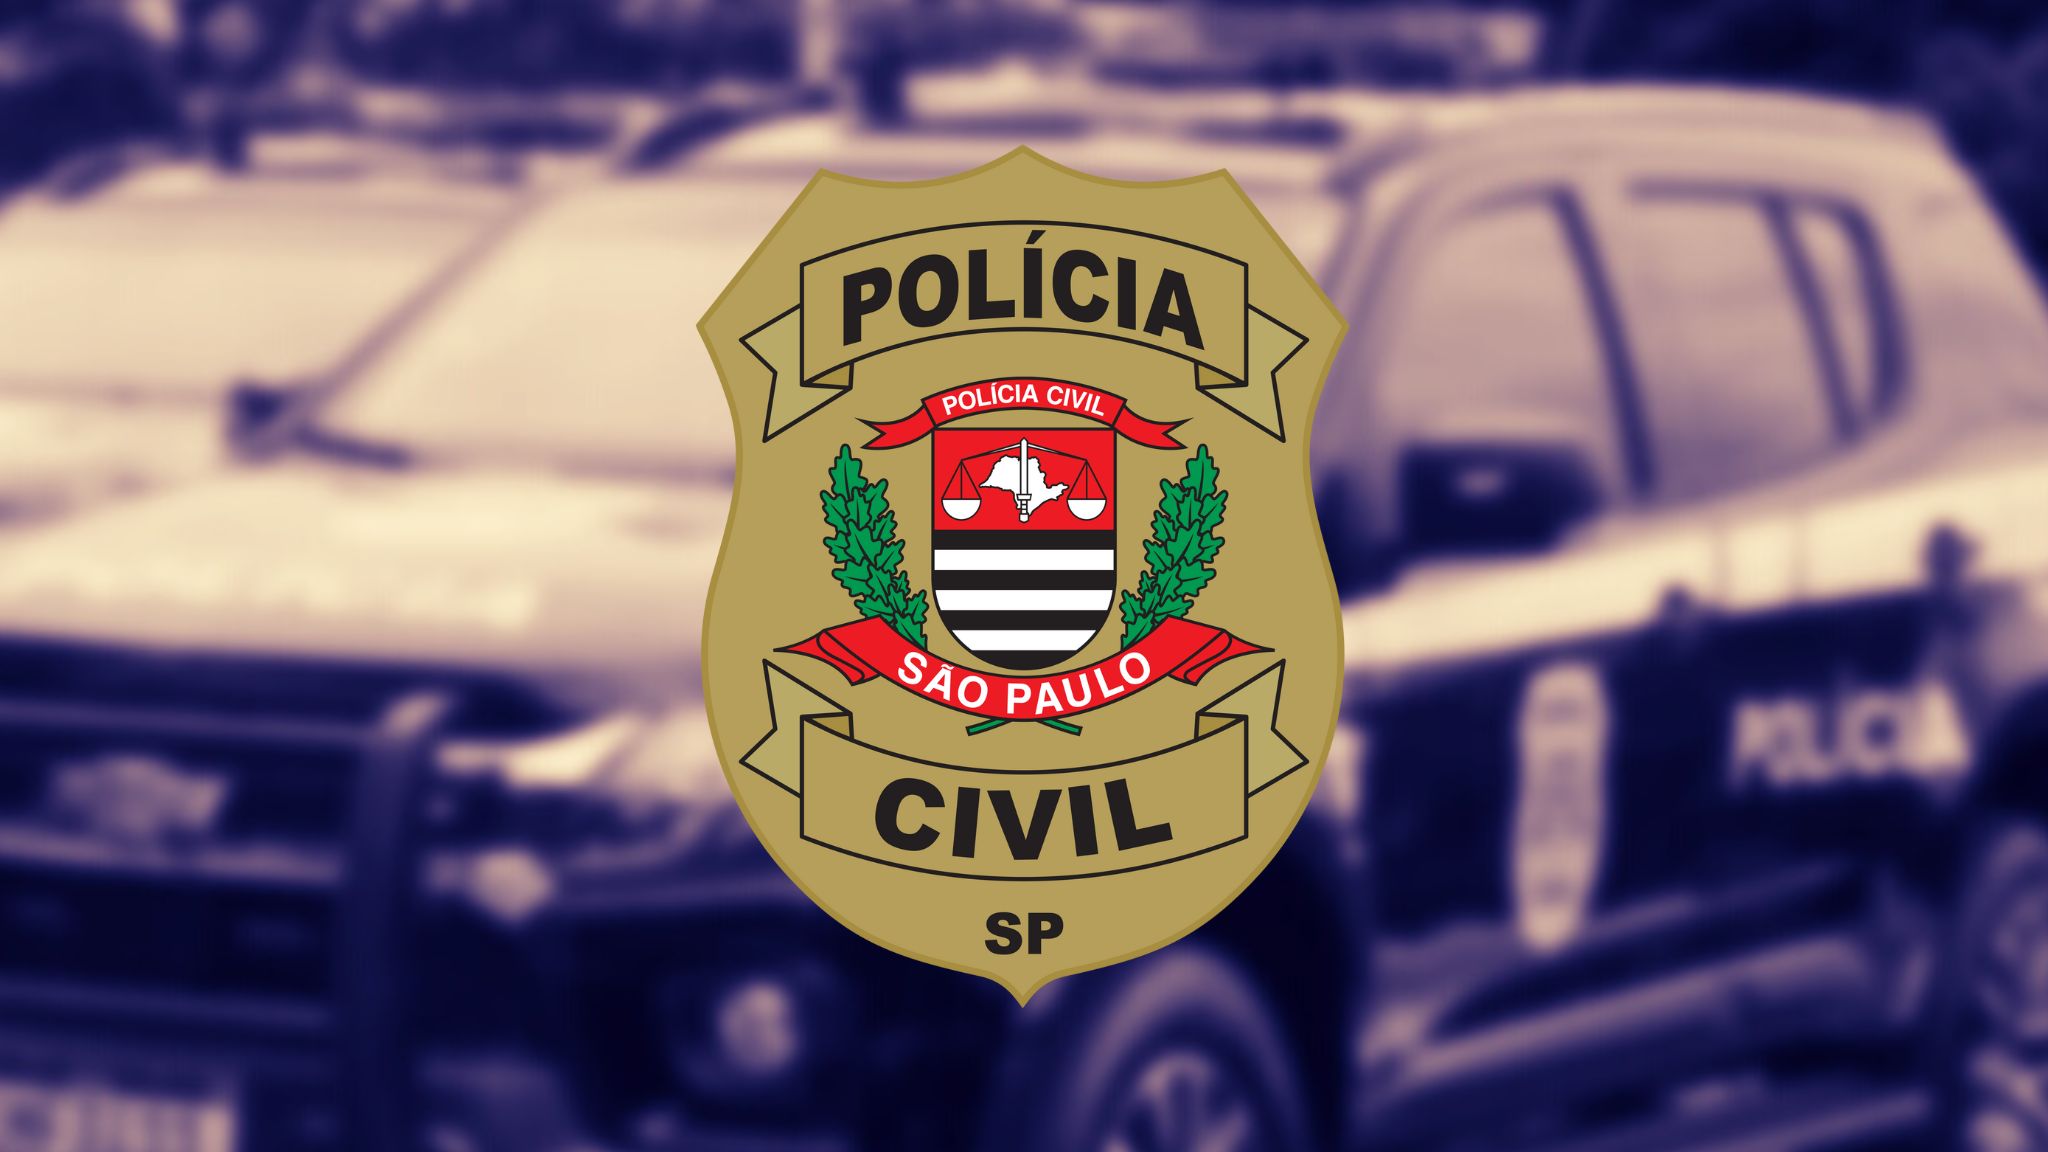 Polícia Civil SP: em breve um dos concursos mais esperados!